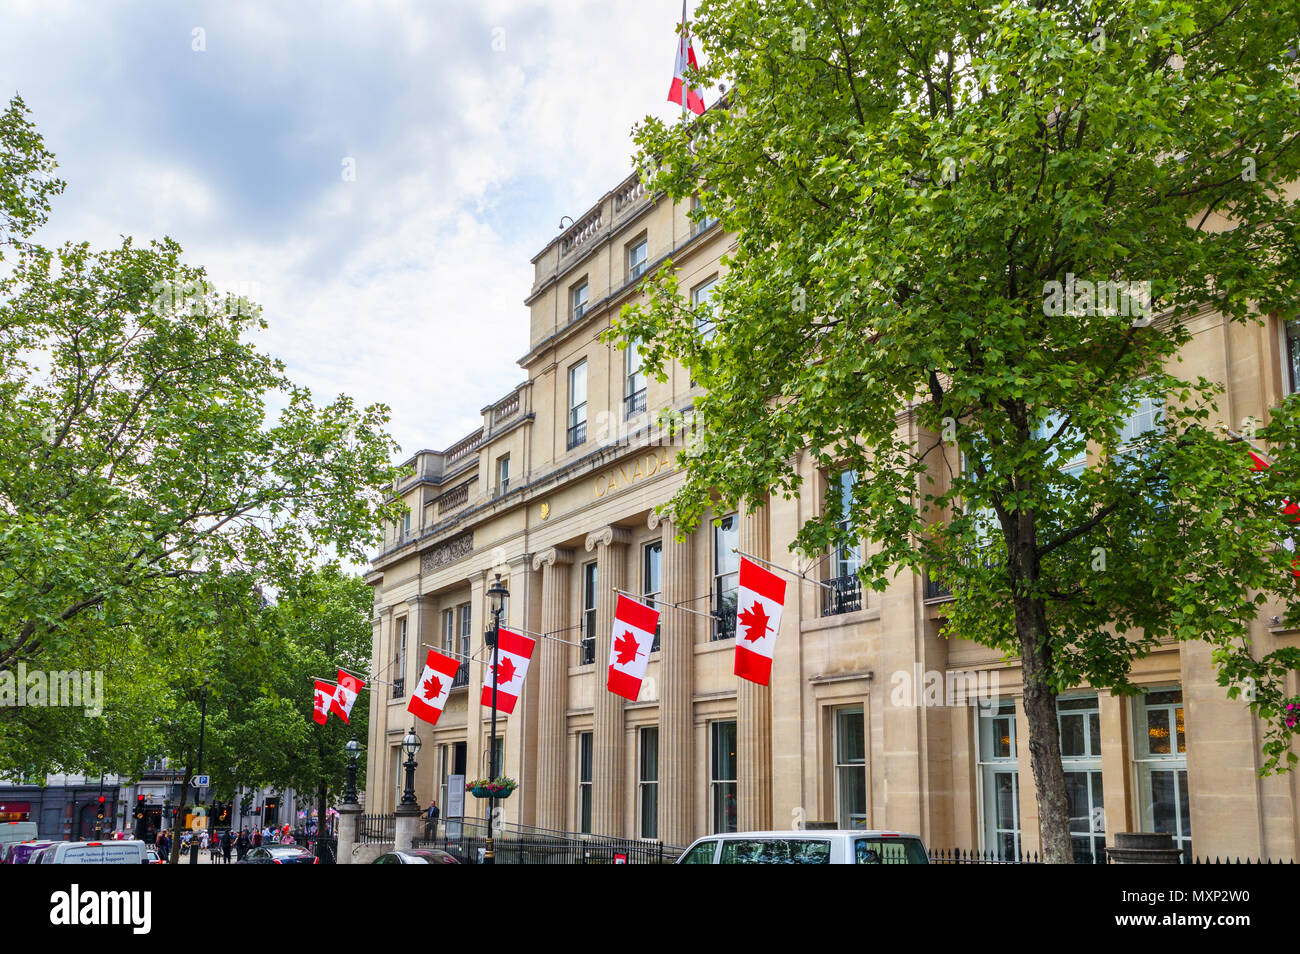 Kanada Haus auf dem Trafalgar Square, Westminster, London SW1, die kanadische hohe Kommission mit roten und weißen Canadian National flags Flying Stockfoto